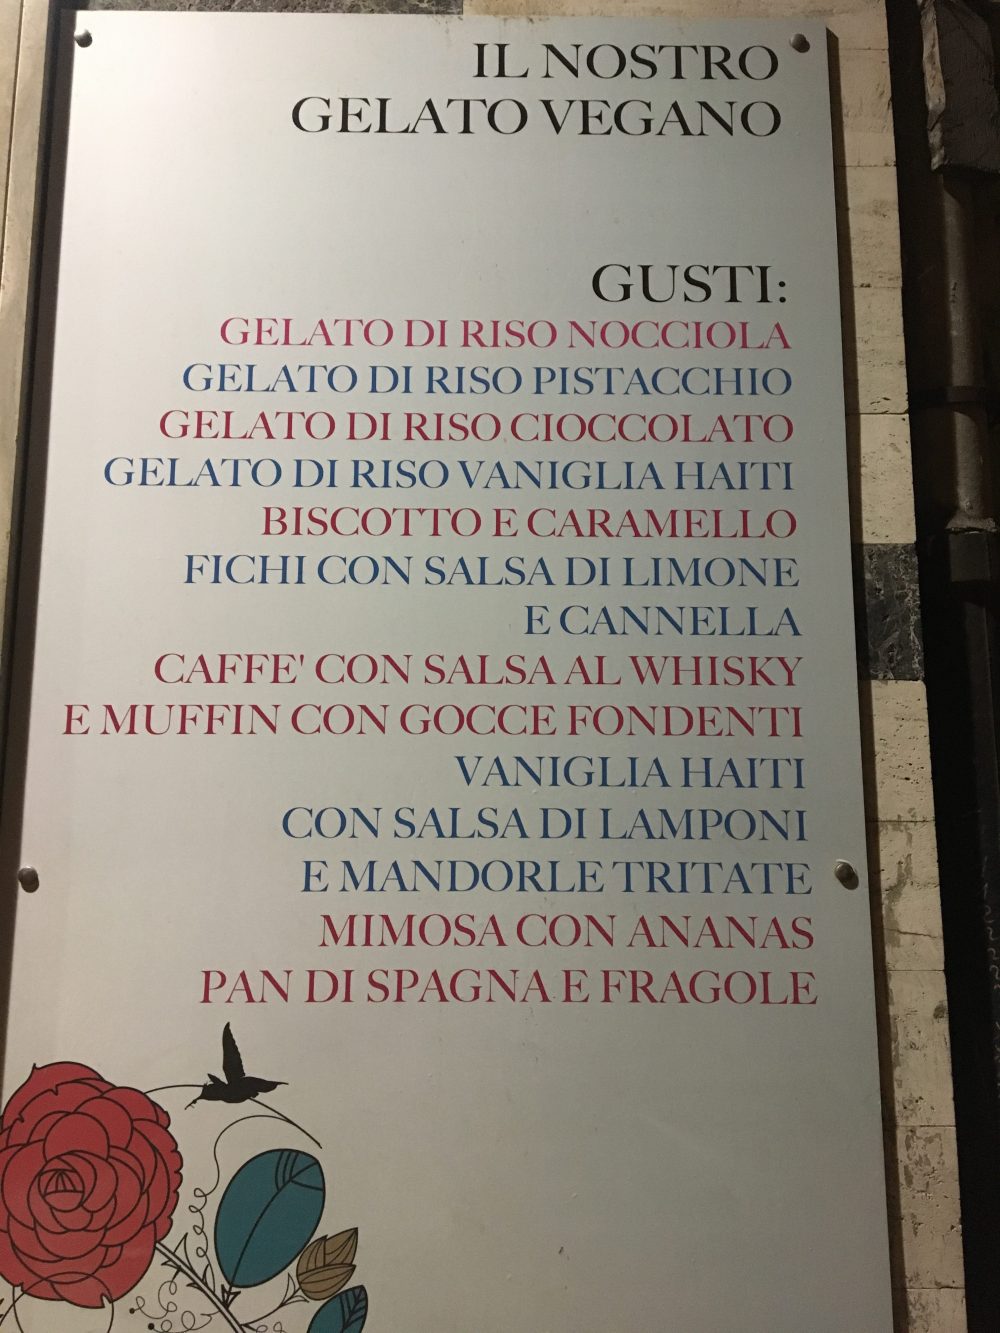 Cremeria Sottozero, elenco gusti